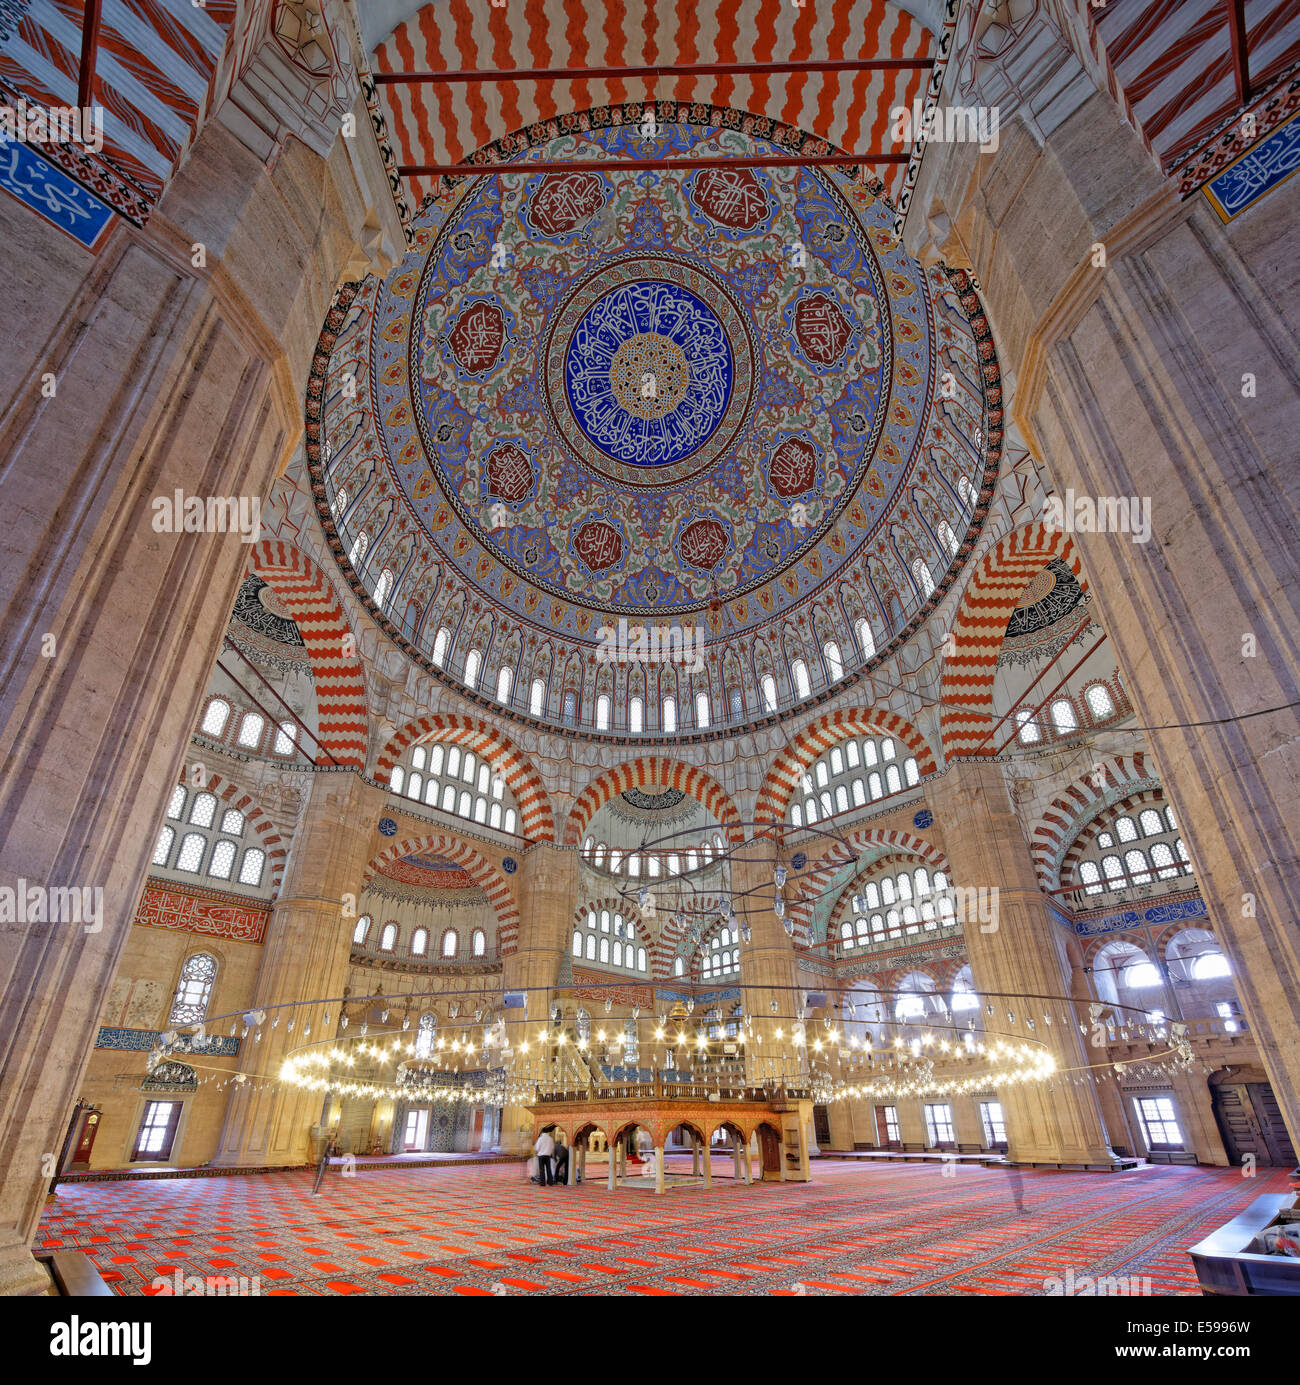 La Turchia, Edirne, Interno della moschea Selimiye Foto & Immagine ...